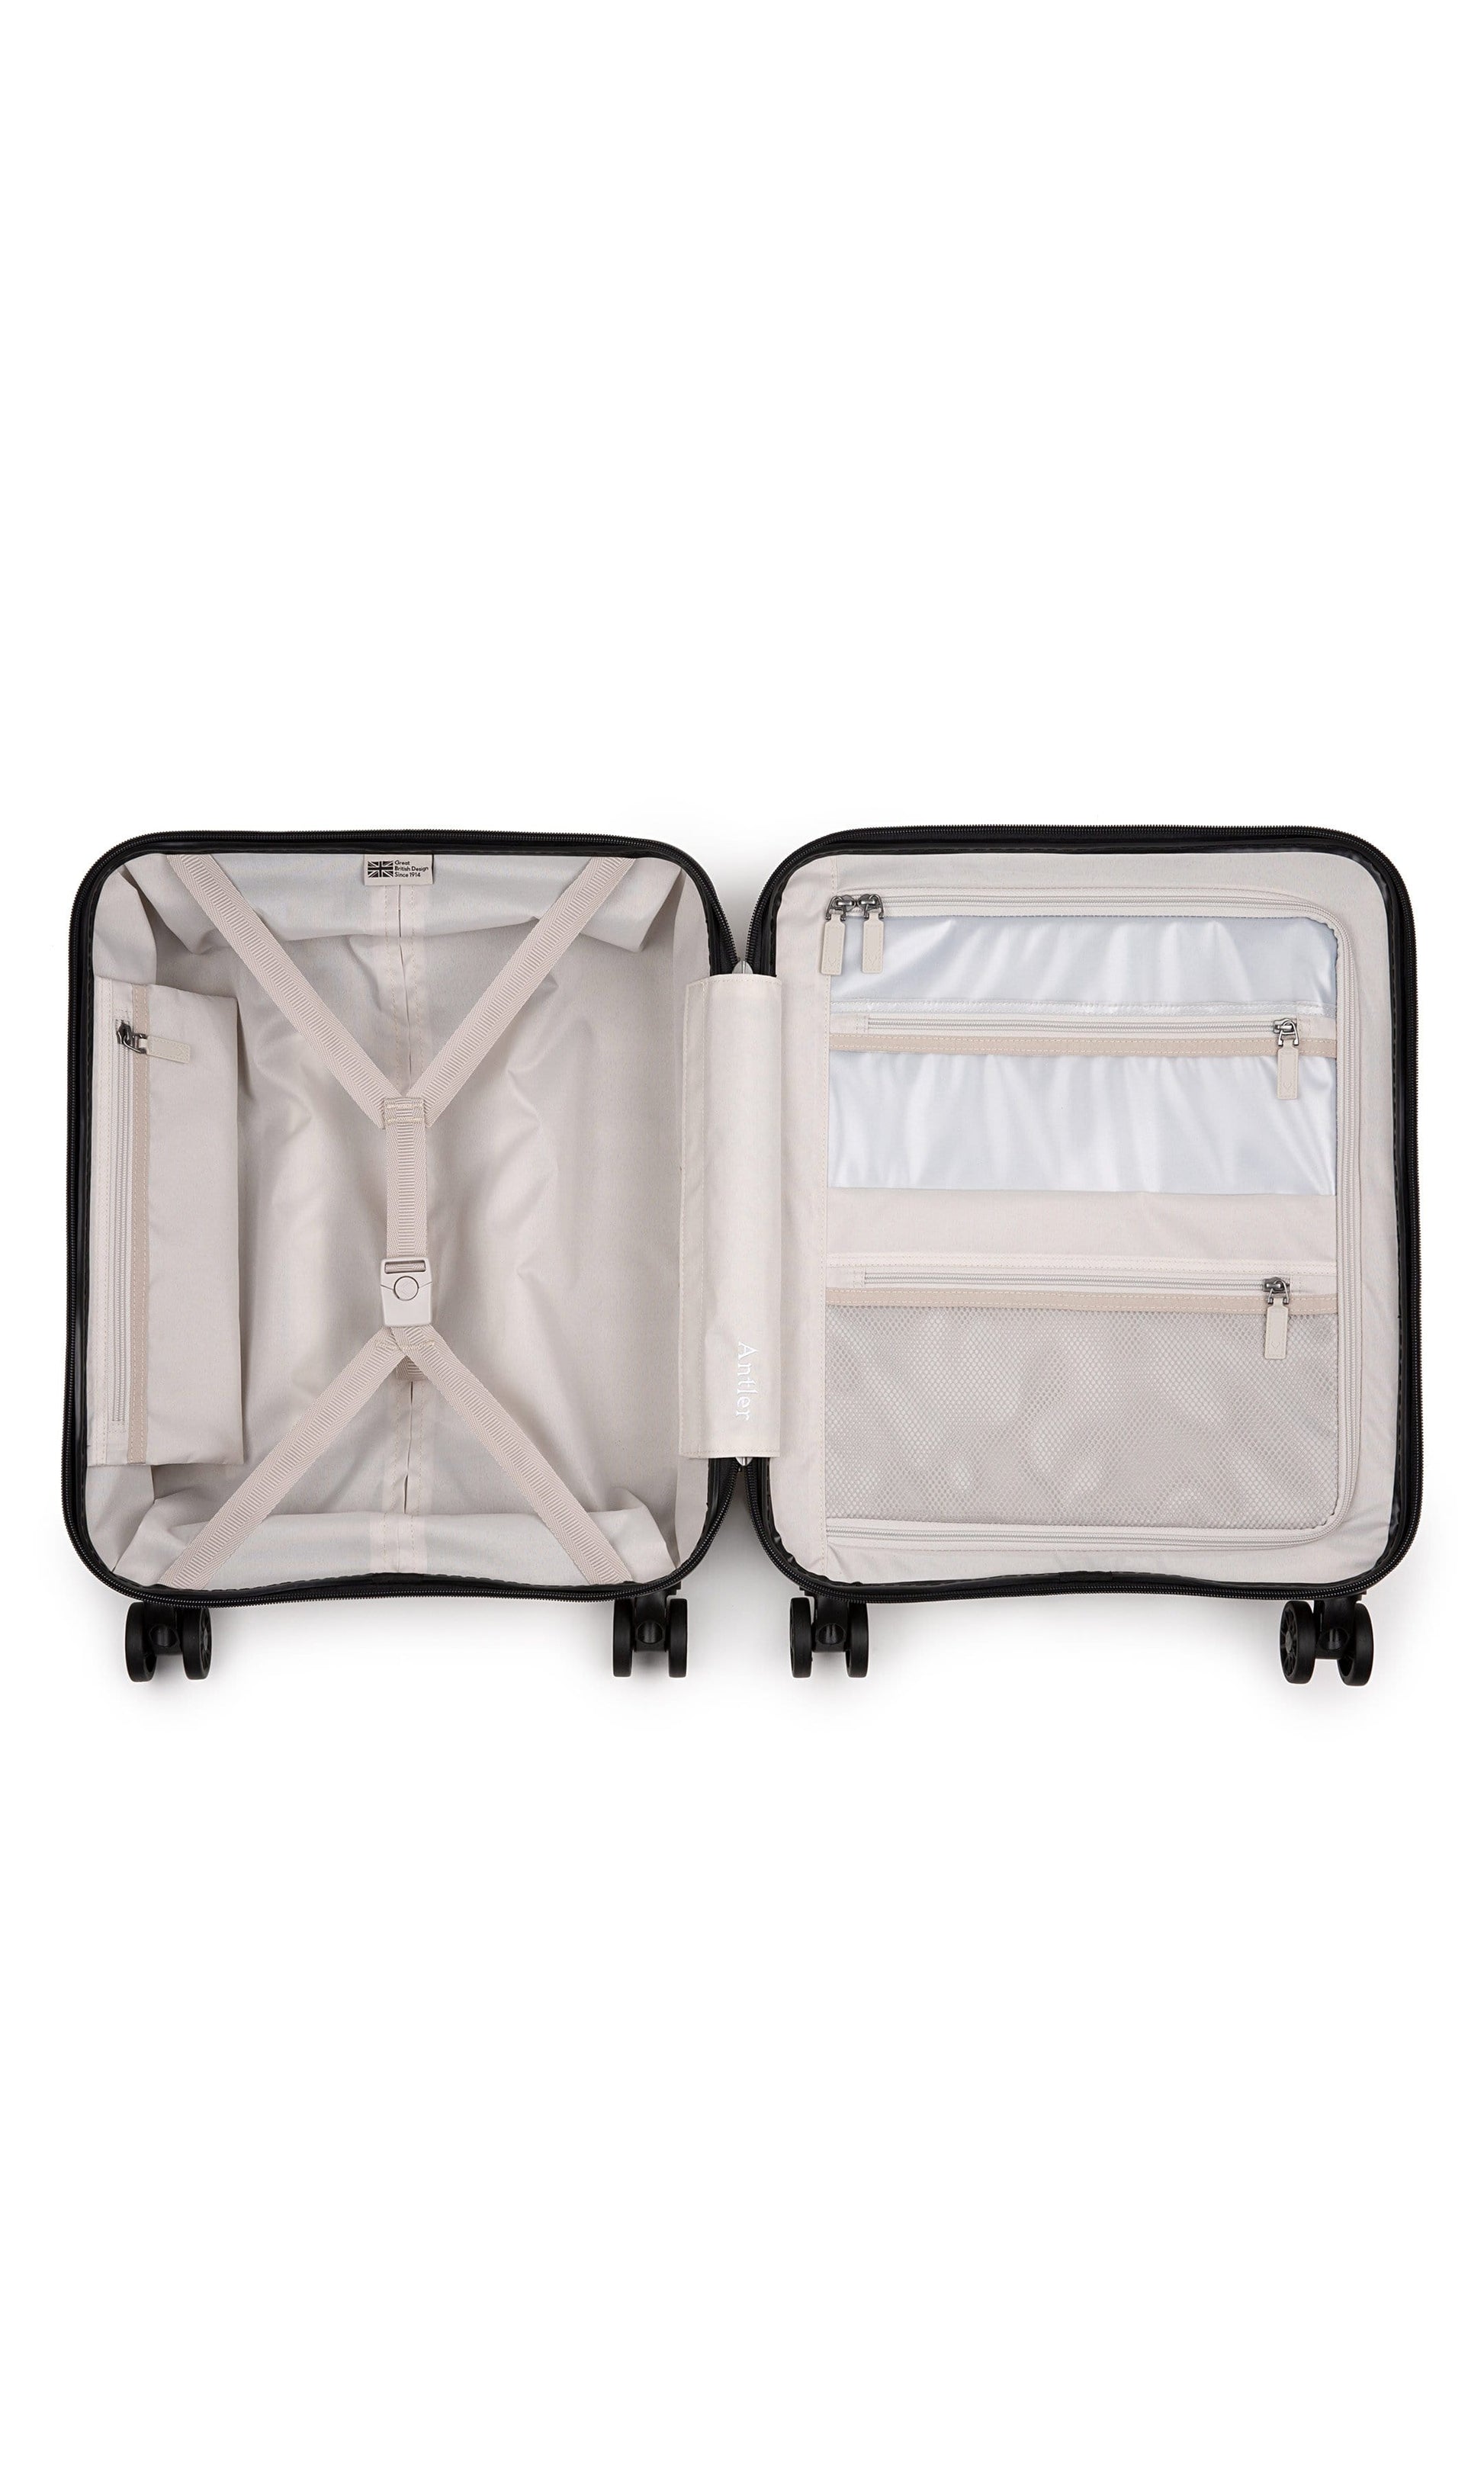 Antler Luggage -  Clifton cabin in navy - Hard Suitcases Clifton 55x40x20cm Cabin Suitcase Navy | Hard Suitcase | Antler UK